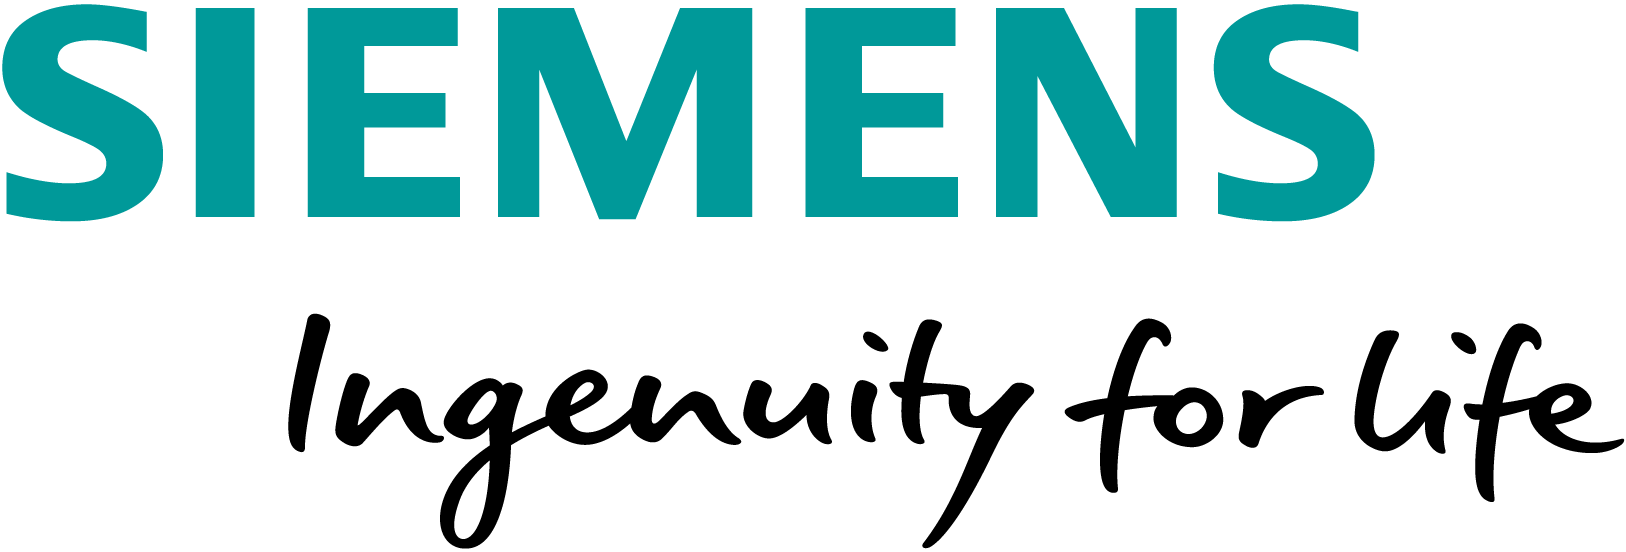 Siemens invert logo